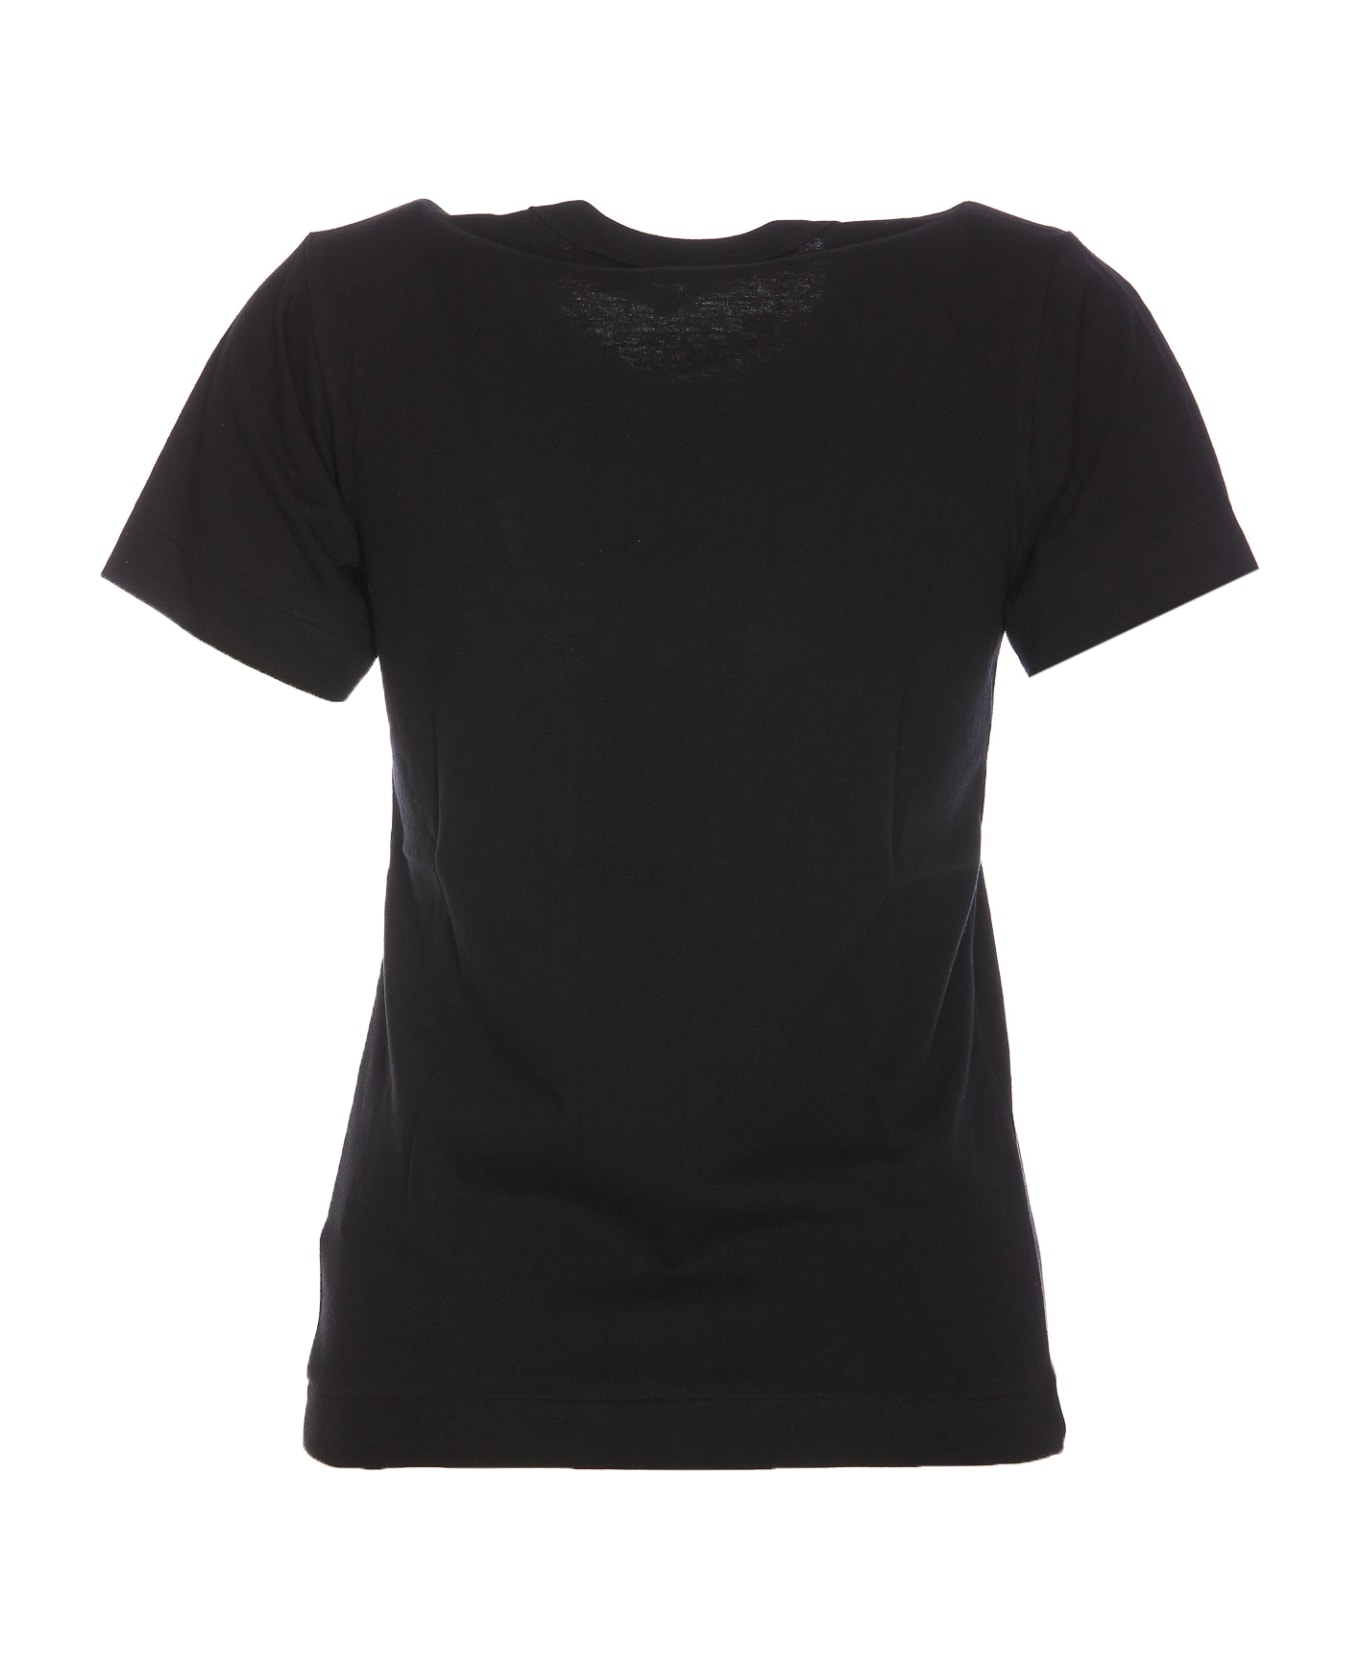 Comme des Garçons Heart Logo T-shirt - Black